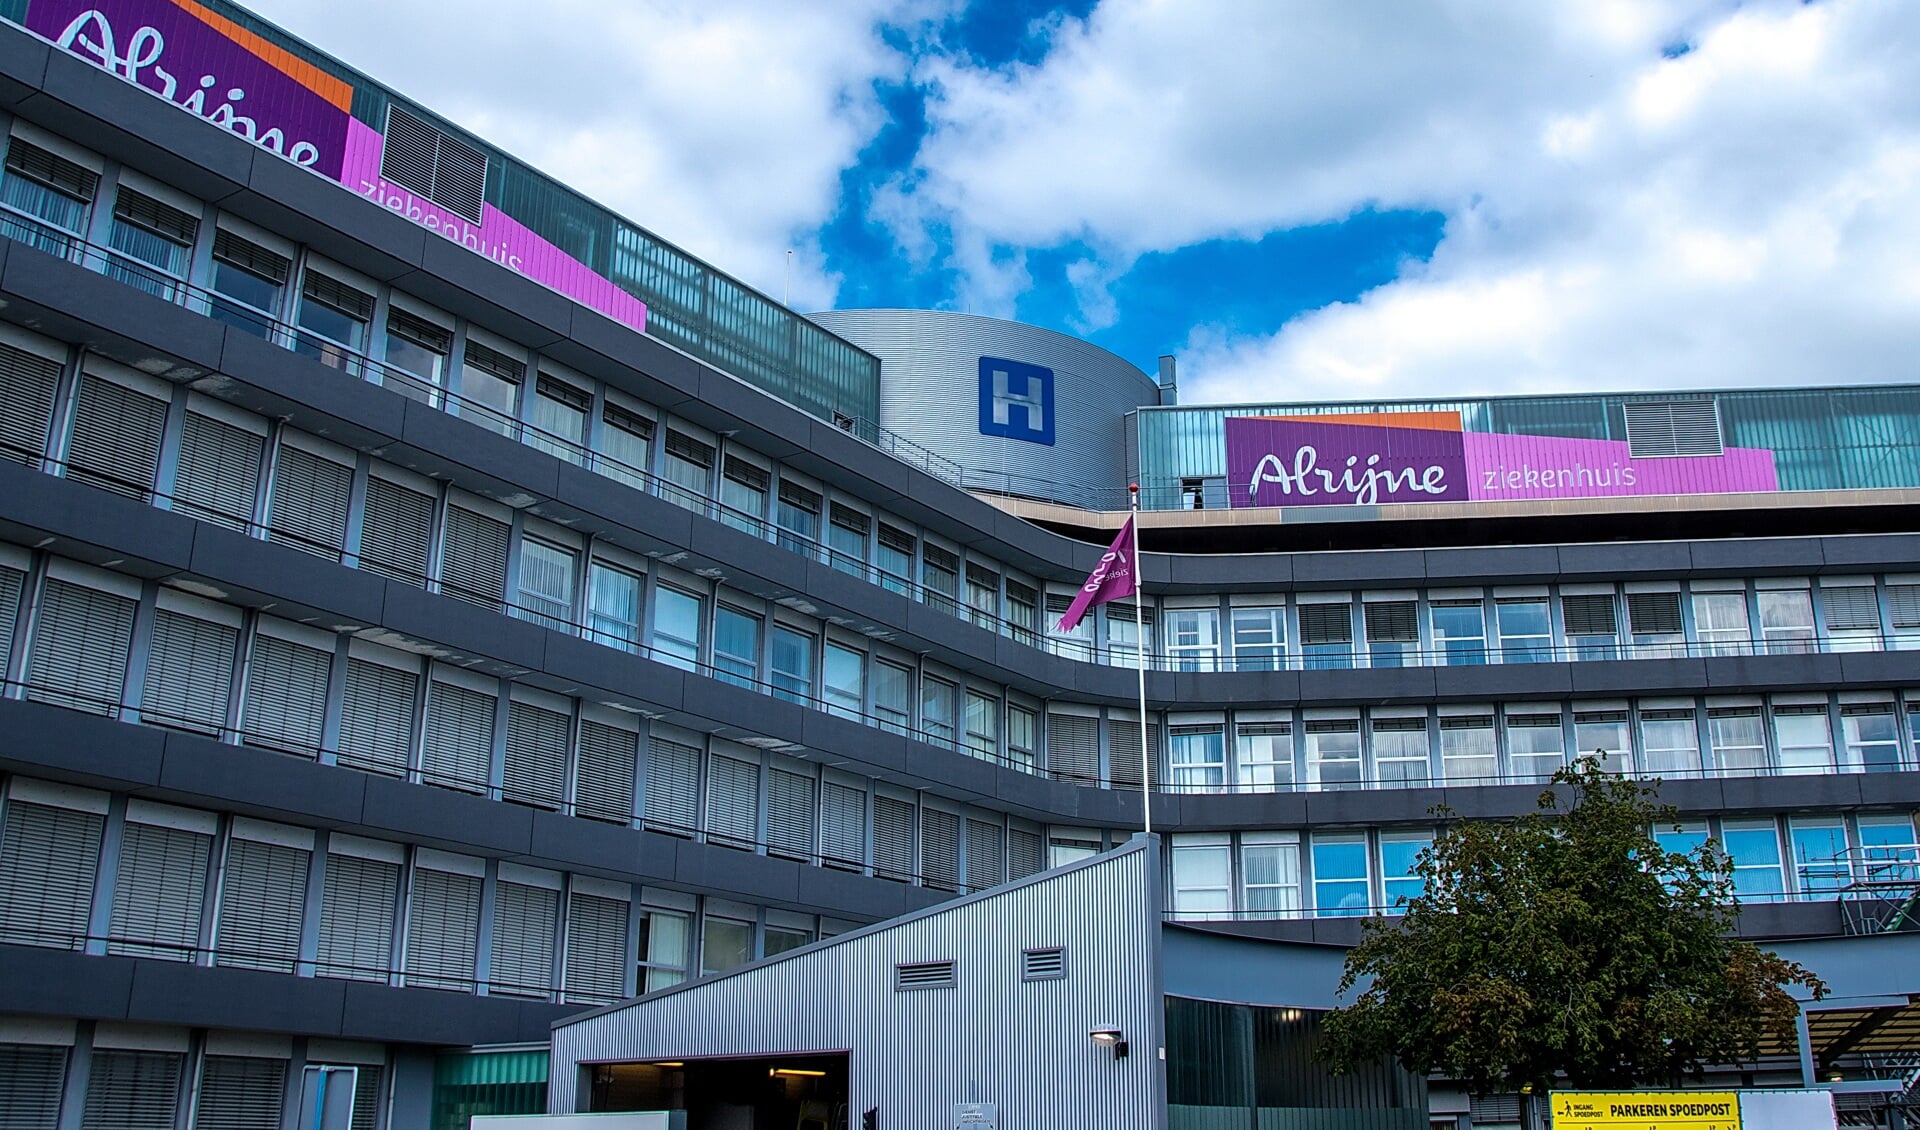 Huisartsenposten Rijnland is gevestigd in het Alrijne Ziekenhuis aan de Simon Smitweg 1 in Leiderdorp (Simon Smitweg 1 (bestemming 90, 1 hoog).